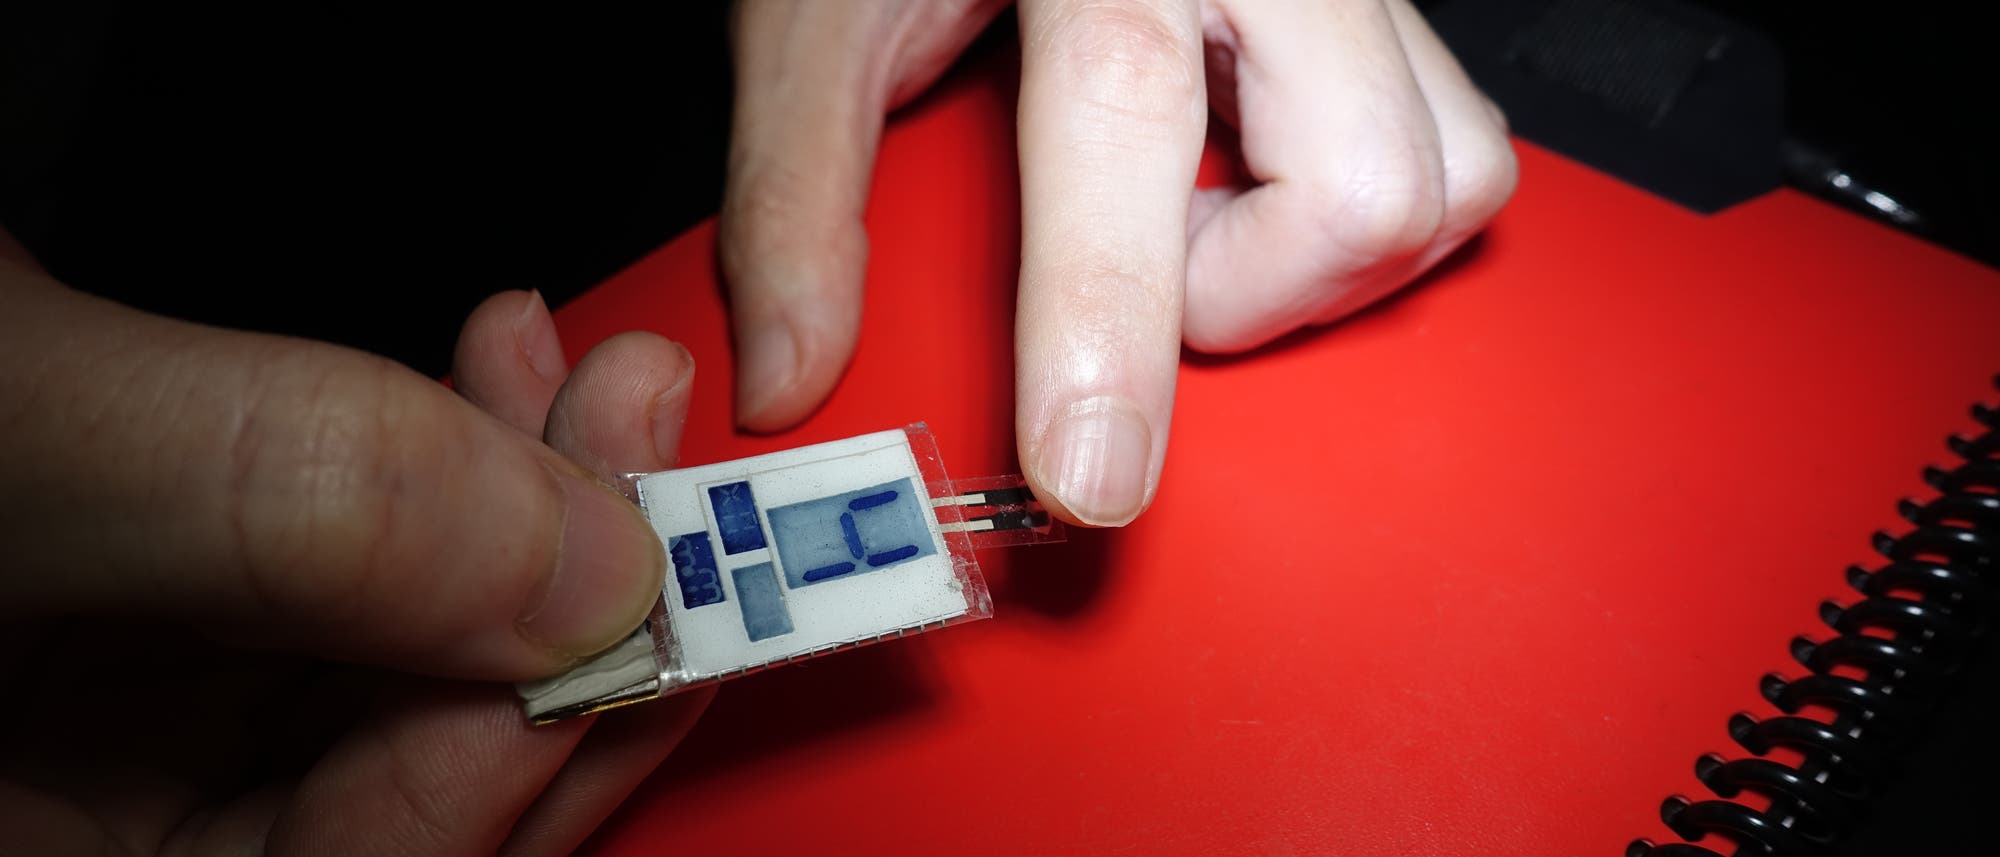 Eine Hand hält einen improvisiert anmutenden Biosensor mit LCD-Nummernanzeige gegen eine Fingerspitze.